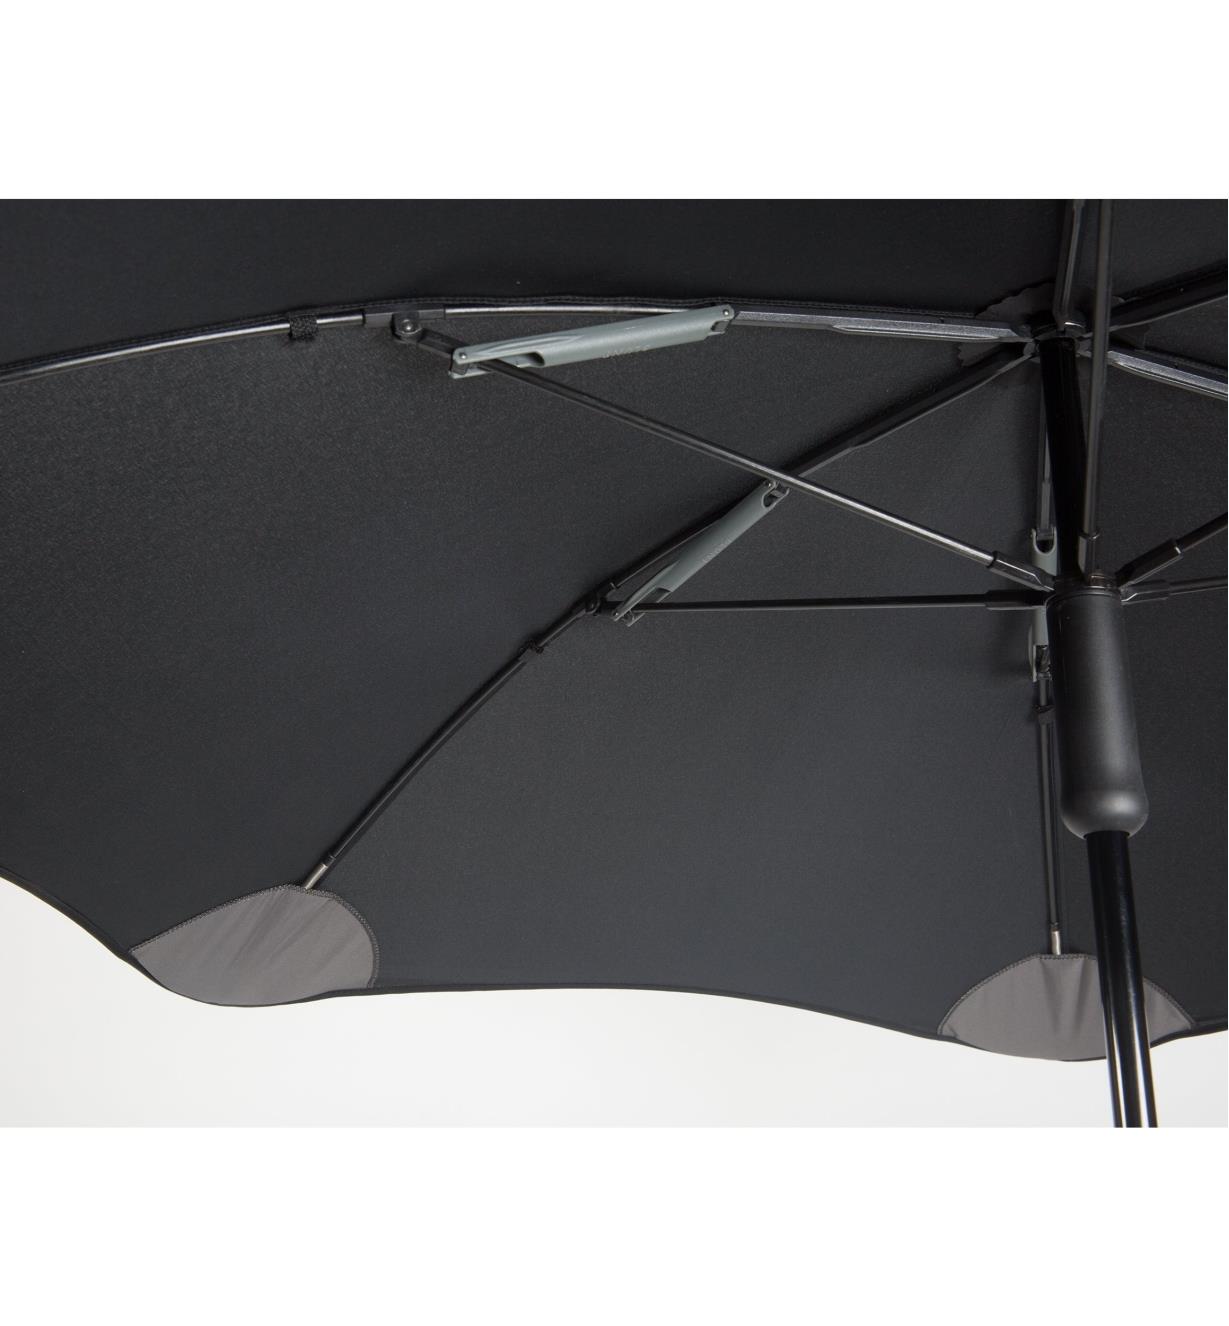 Parapluie pleine grandeur Classic, vu du dessous